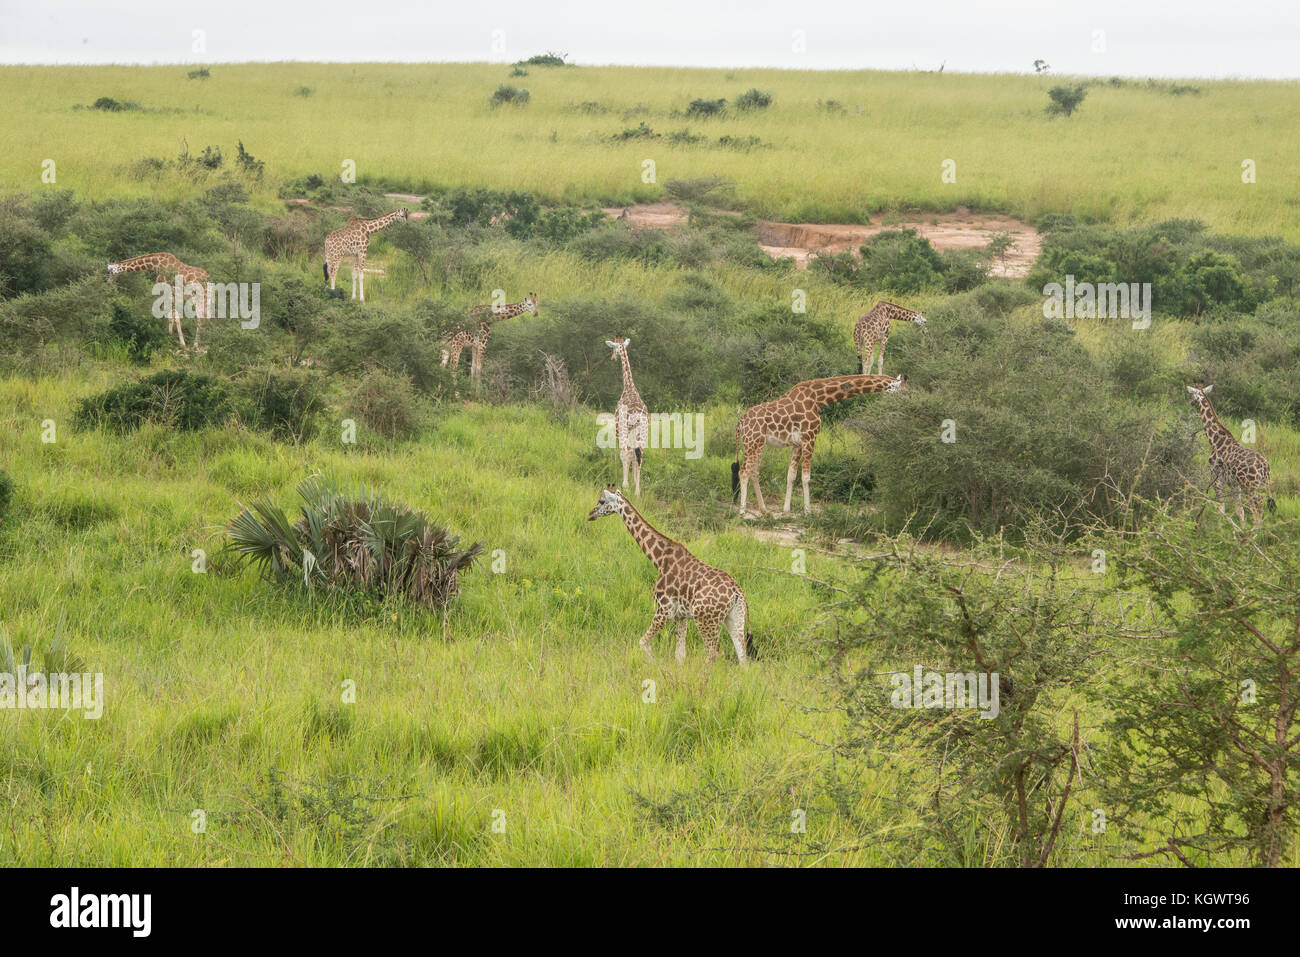 Group of Endangered Rothschild's giraffes feeding on trees in Murchison Falls National Park, Uganda. Stock Photo